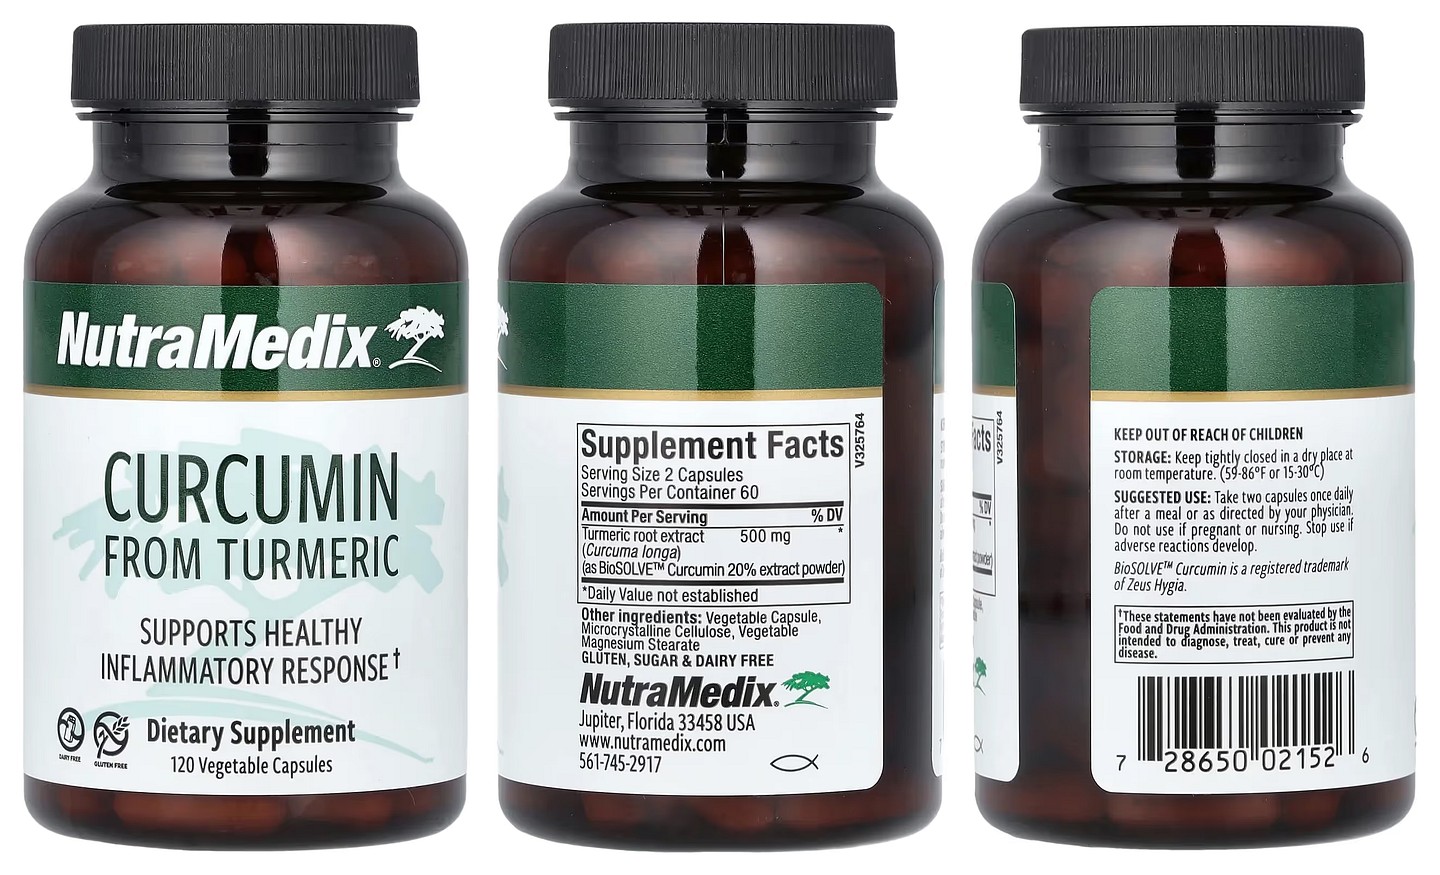 NutraMedix, Curcumin From Turmeric packaging